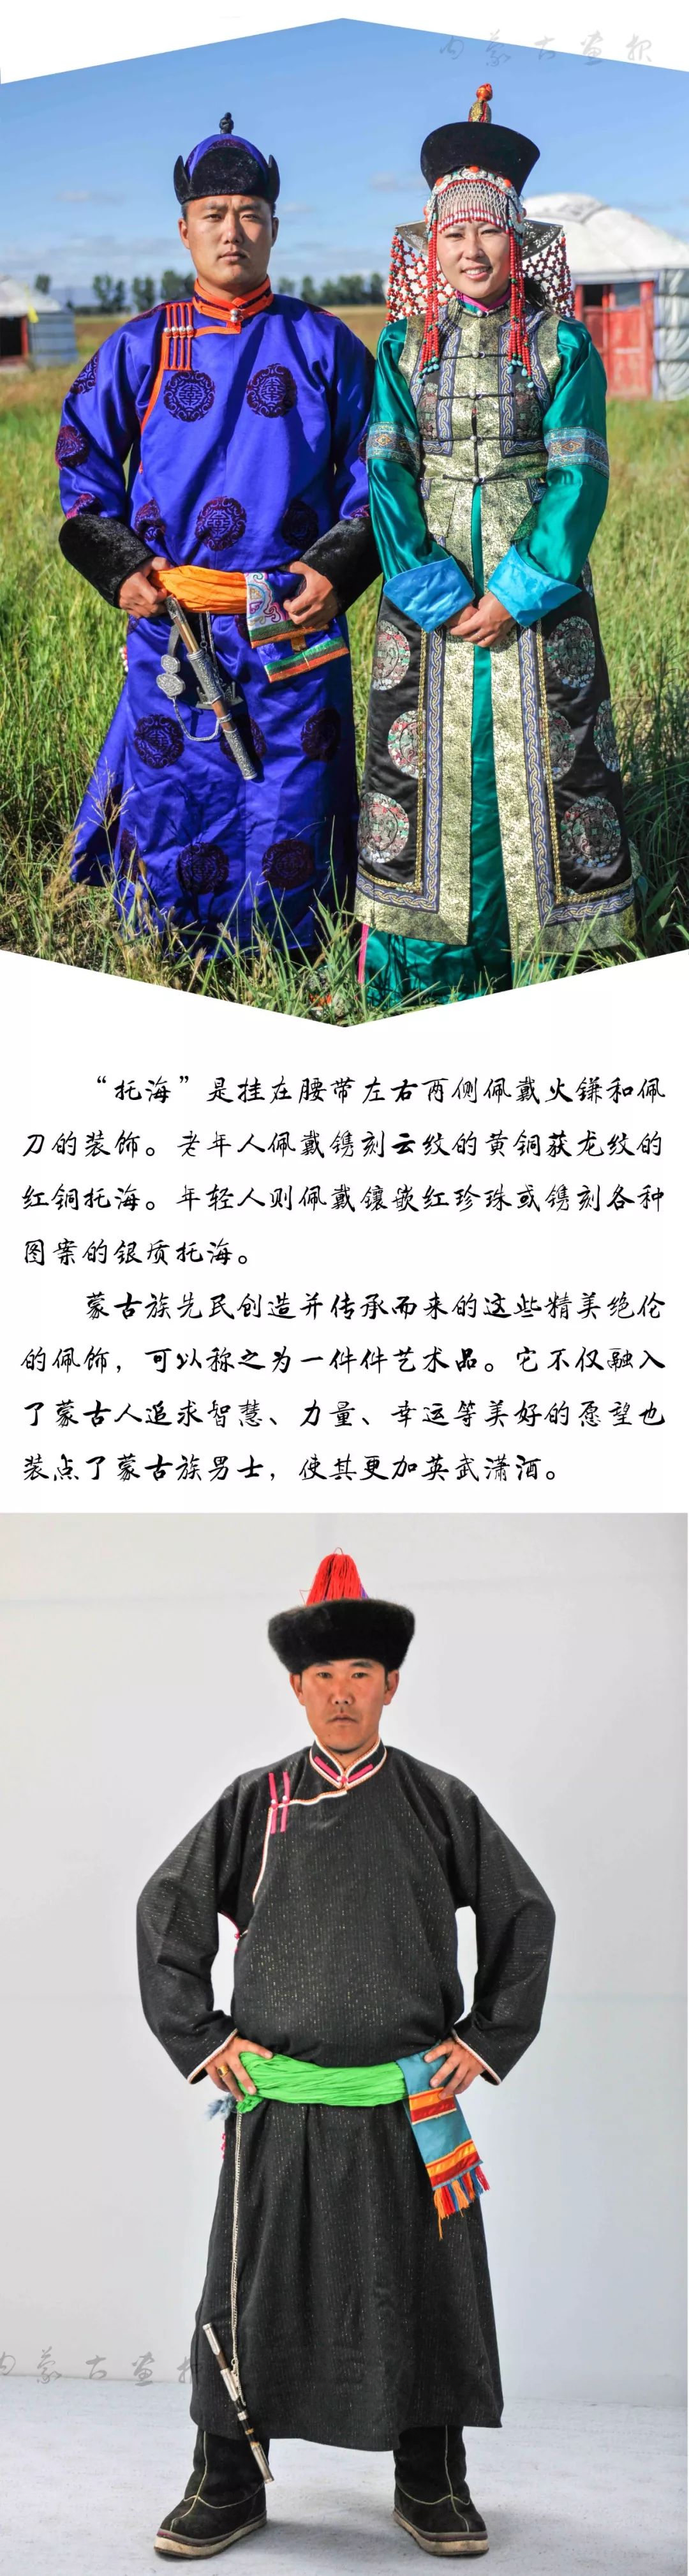 2020蒙古族服装服饰设计大赛 ᠮᠣᠩᠭᠤᠯ ᠦᠨᠳᠦᠰᠦᠲᠡᠨ ᠦ᠌ ᠬᠤᠪᠴᠠᠰᠤ ᠵᠠᠰᠠᠯ ᠤ᠋ᠨ ᠤᠷᠤᠯᠳᠤᠭᠠᠨ-草原元素 ...